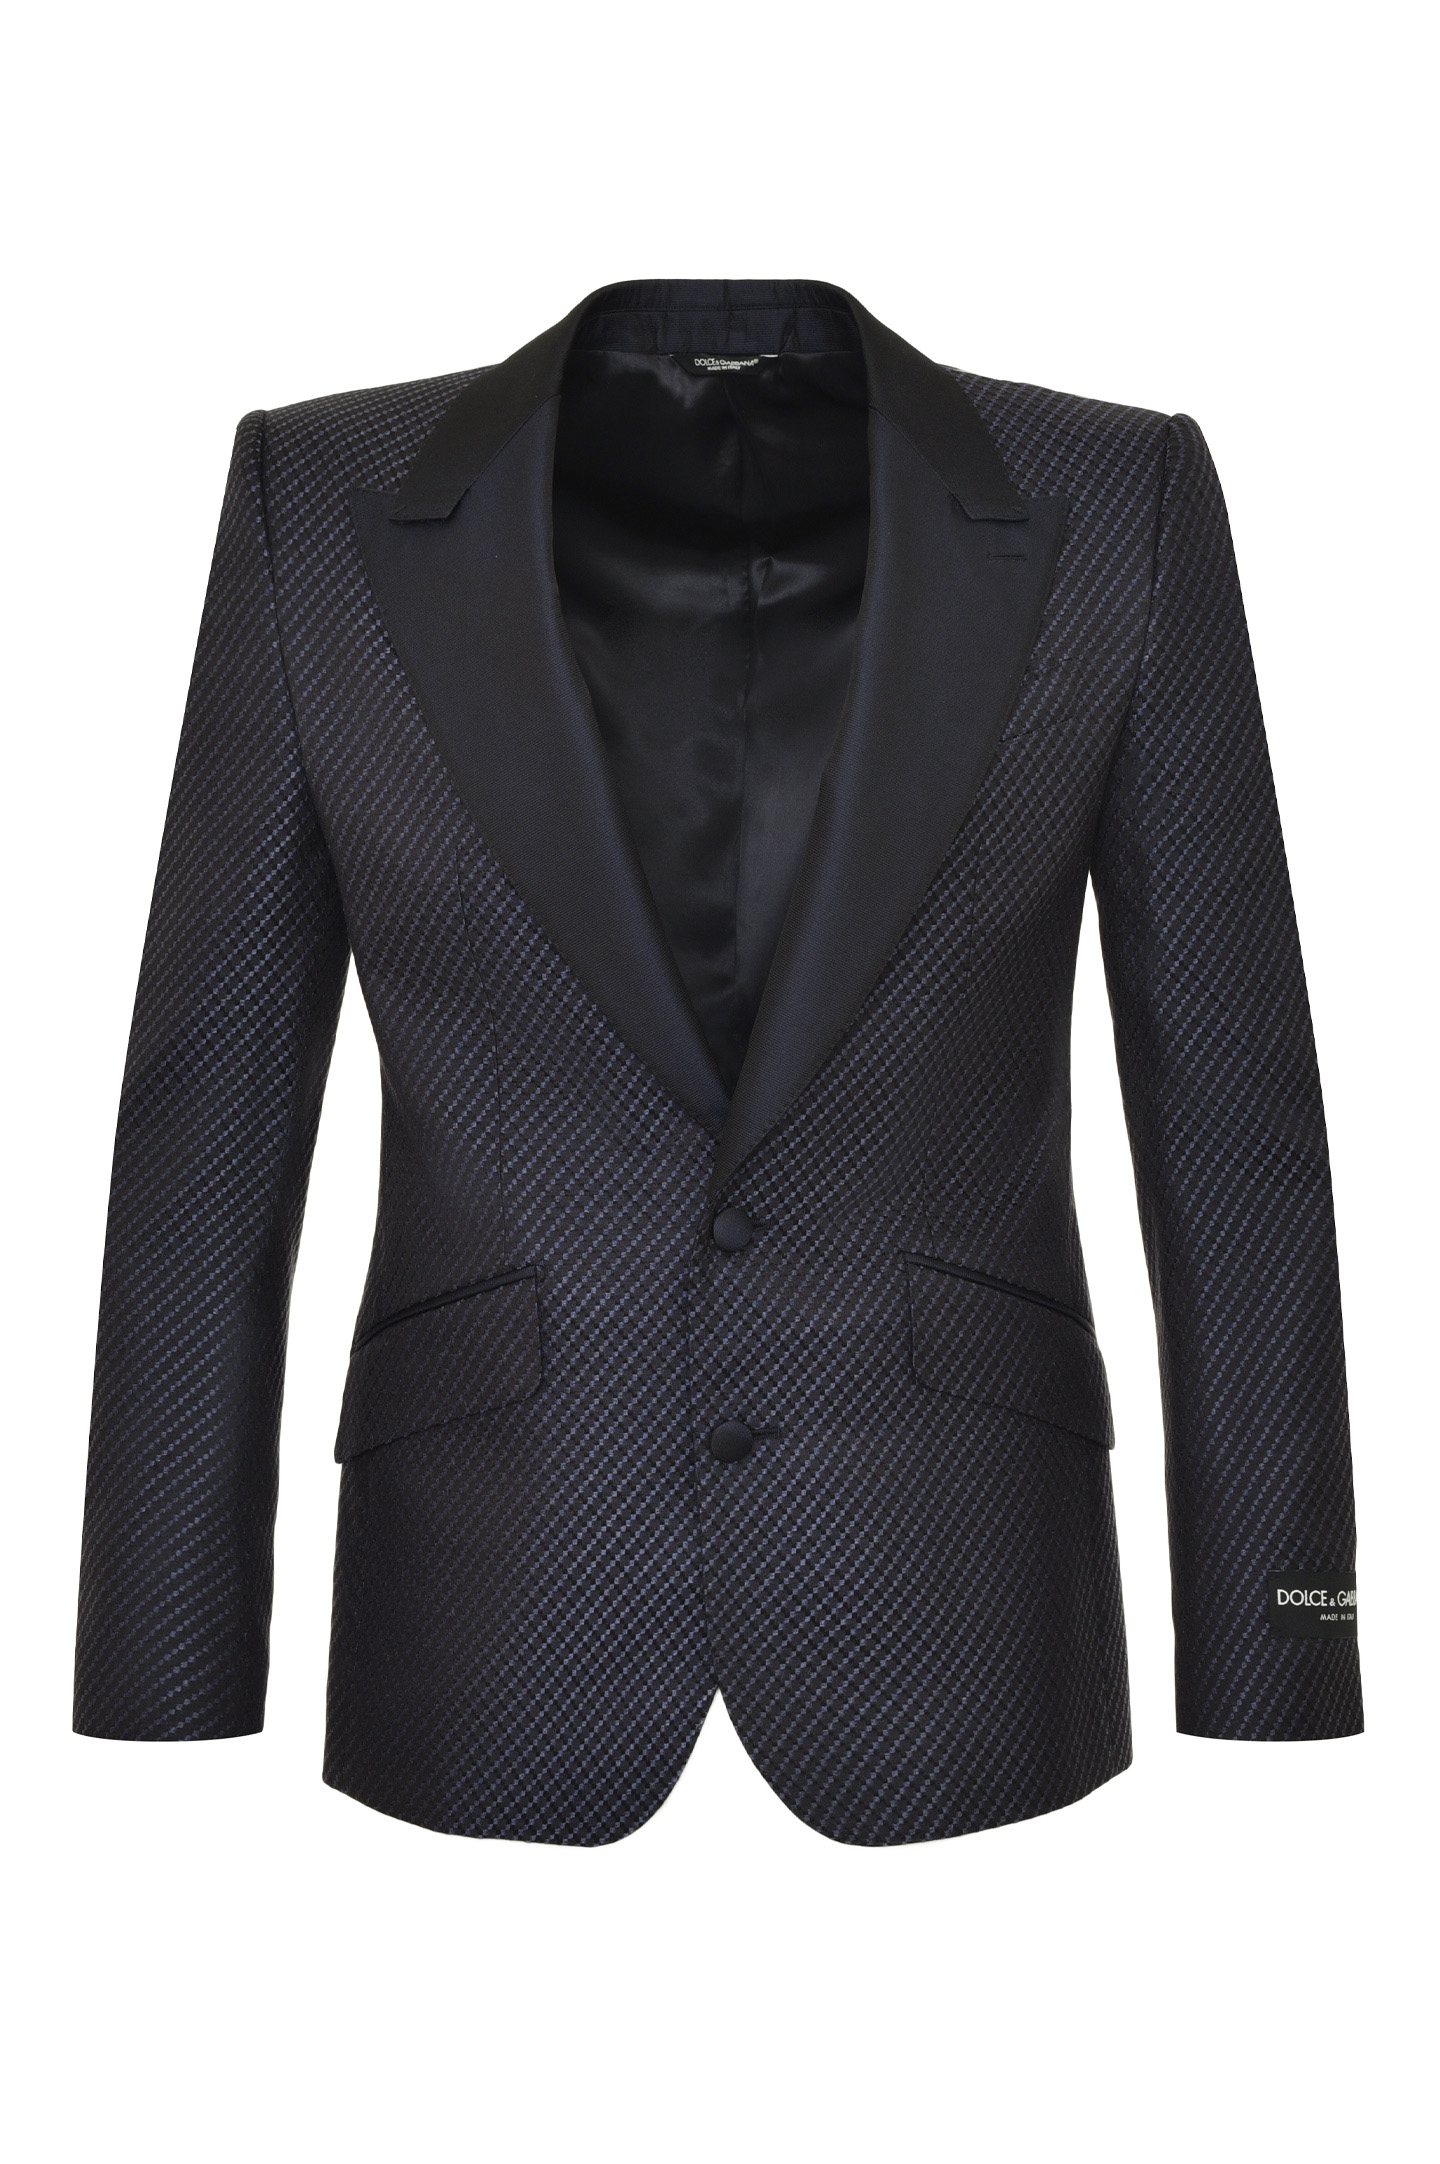 Пиджак DOLCE & GABBANA G2PW8T FJ3DO, цвет: Черный, Мужской